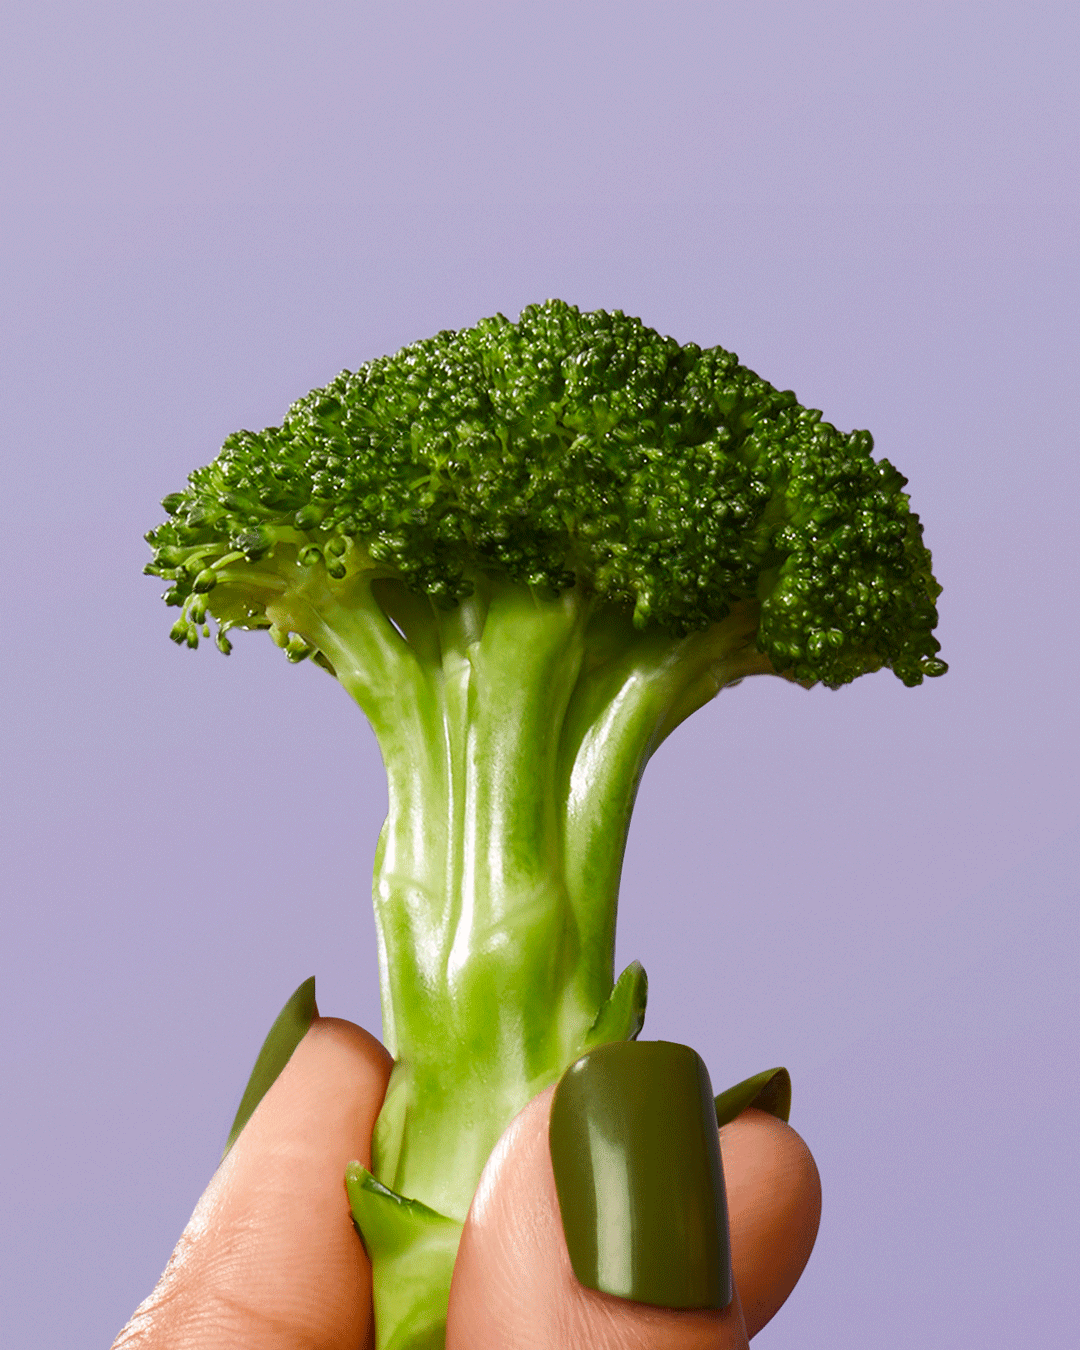 Conceptual-Food-Photographer-Lisa-Predko-420-Broccoli